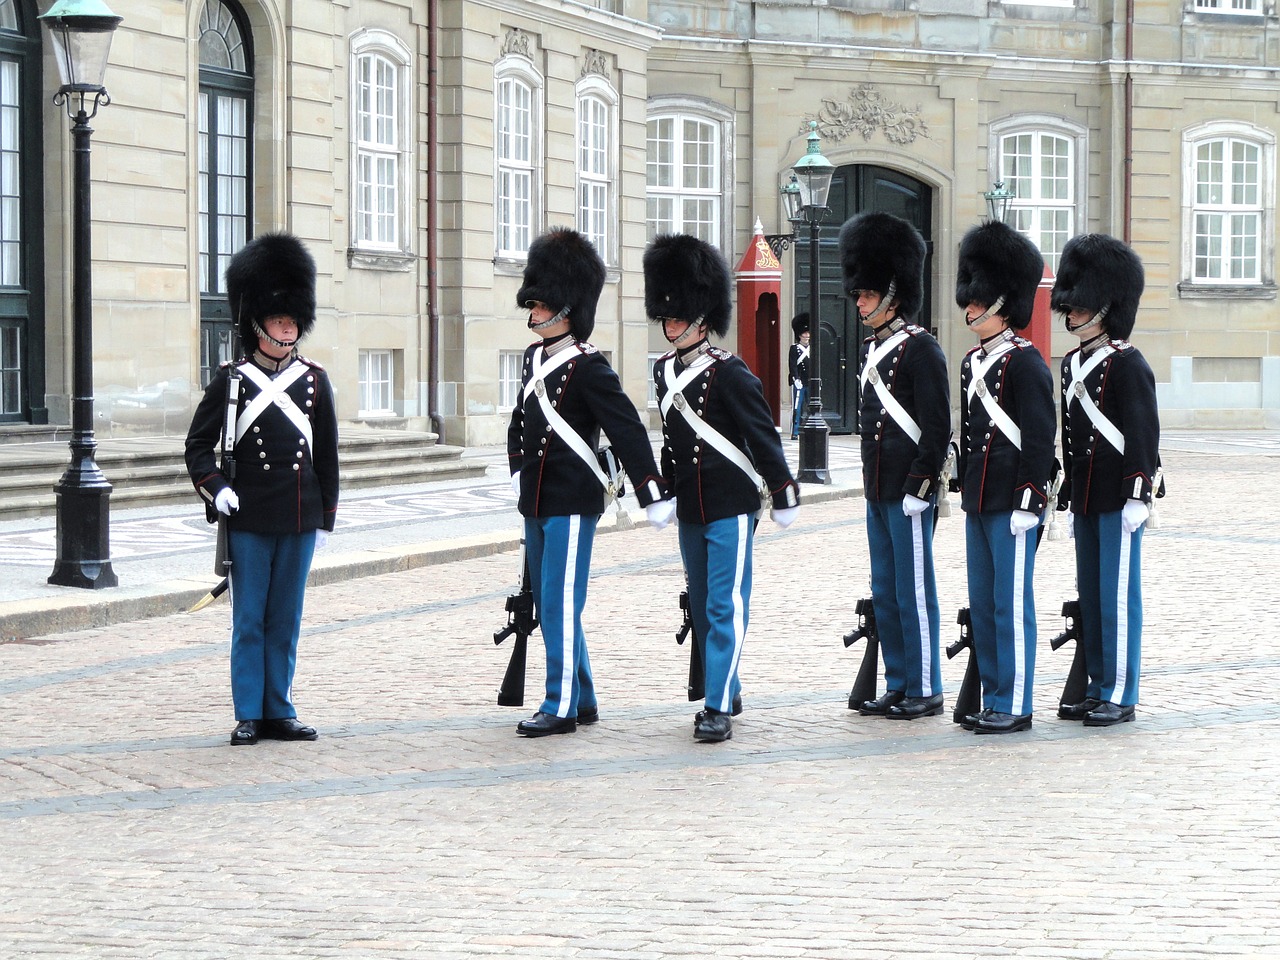 Apsaugai, Amalienborg, Rūmai, Kopenhaga, Denmark, Liemenos Skrybėlės, Kareiviai, Karališkasis, Saugumas, Tradicija